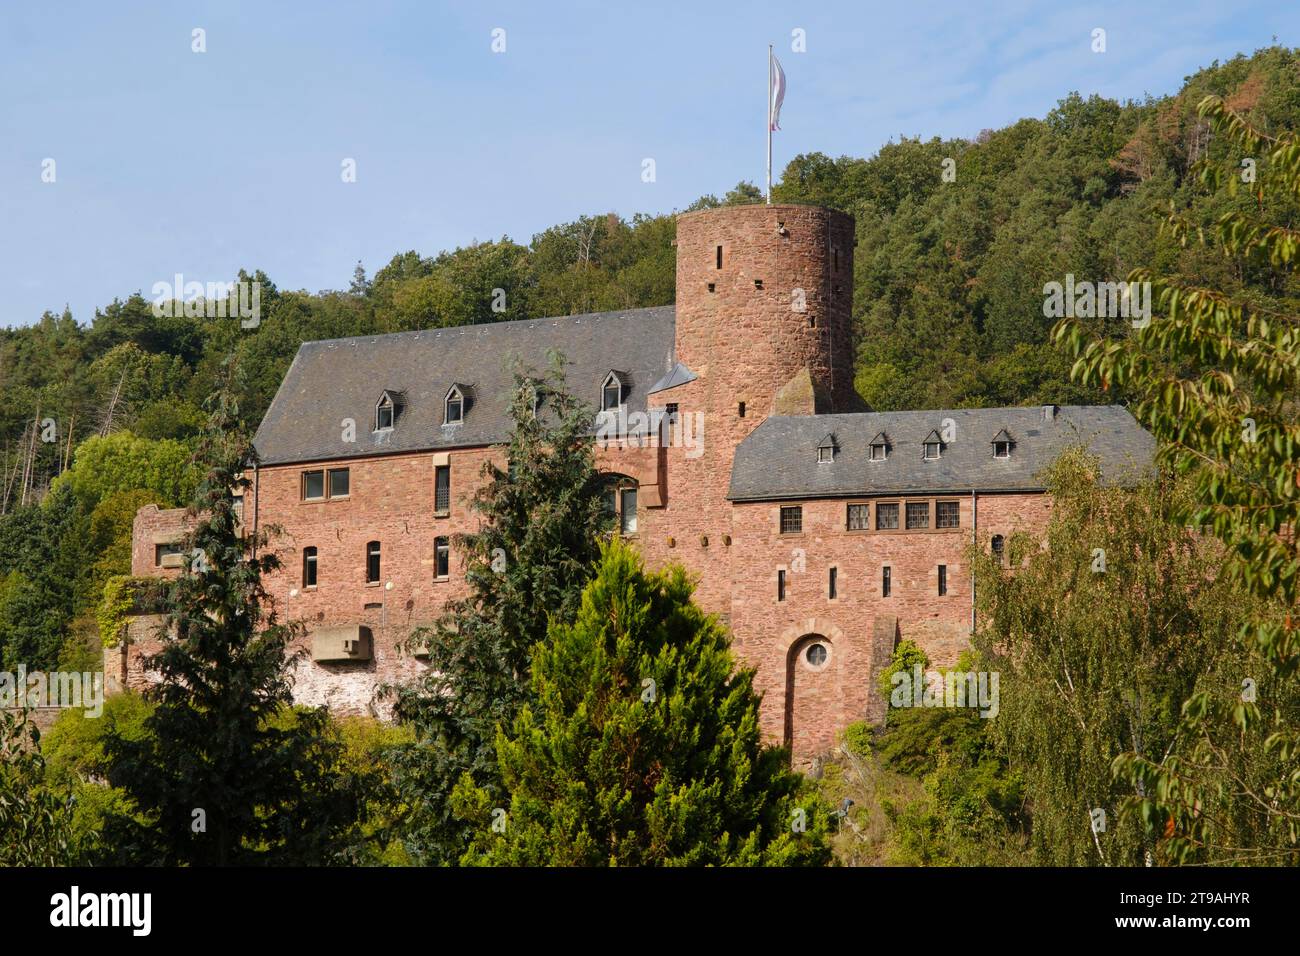 Castello storico di Hengebach, Heimbach, parco nazionale di Eifel, Renania settentrionale-Vestfalia, Germania Foto Stock